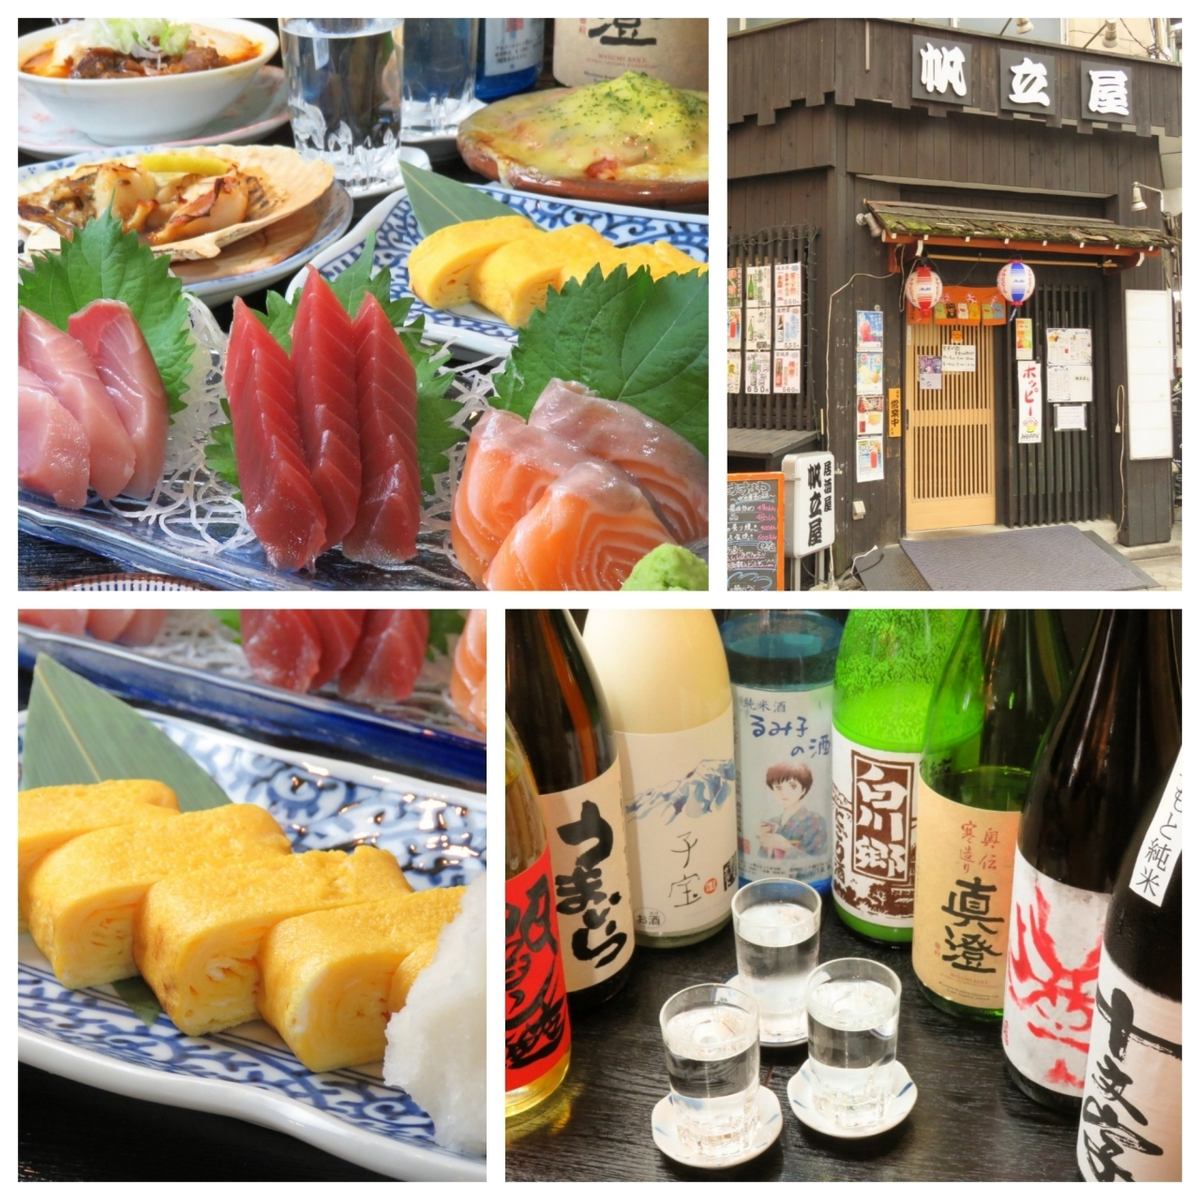 Enjoy the taste of seasonal ingredients with sake!